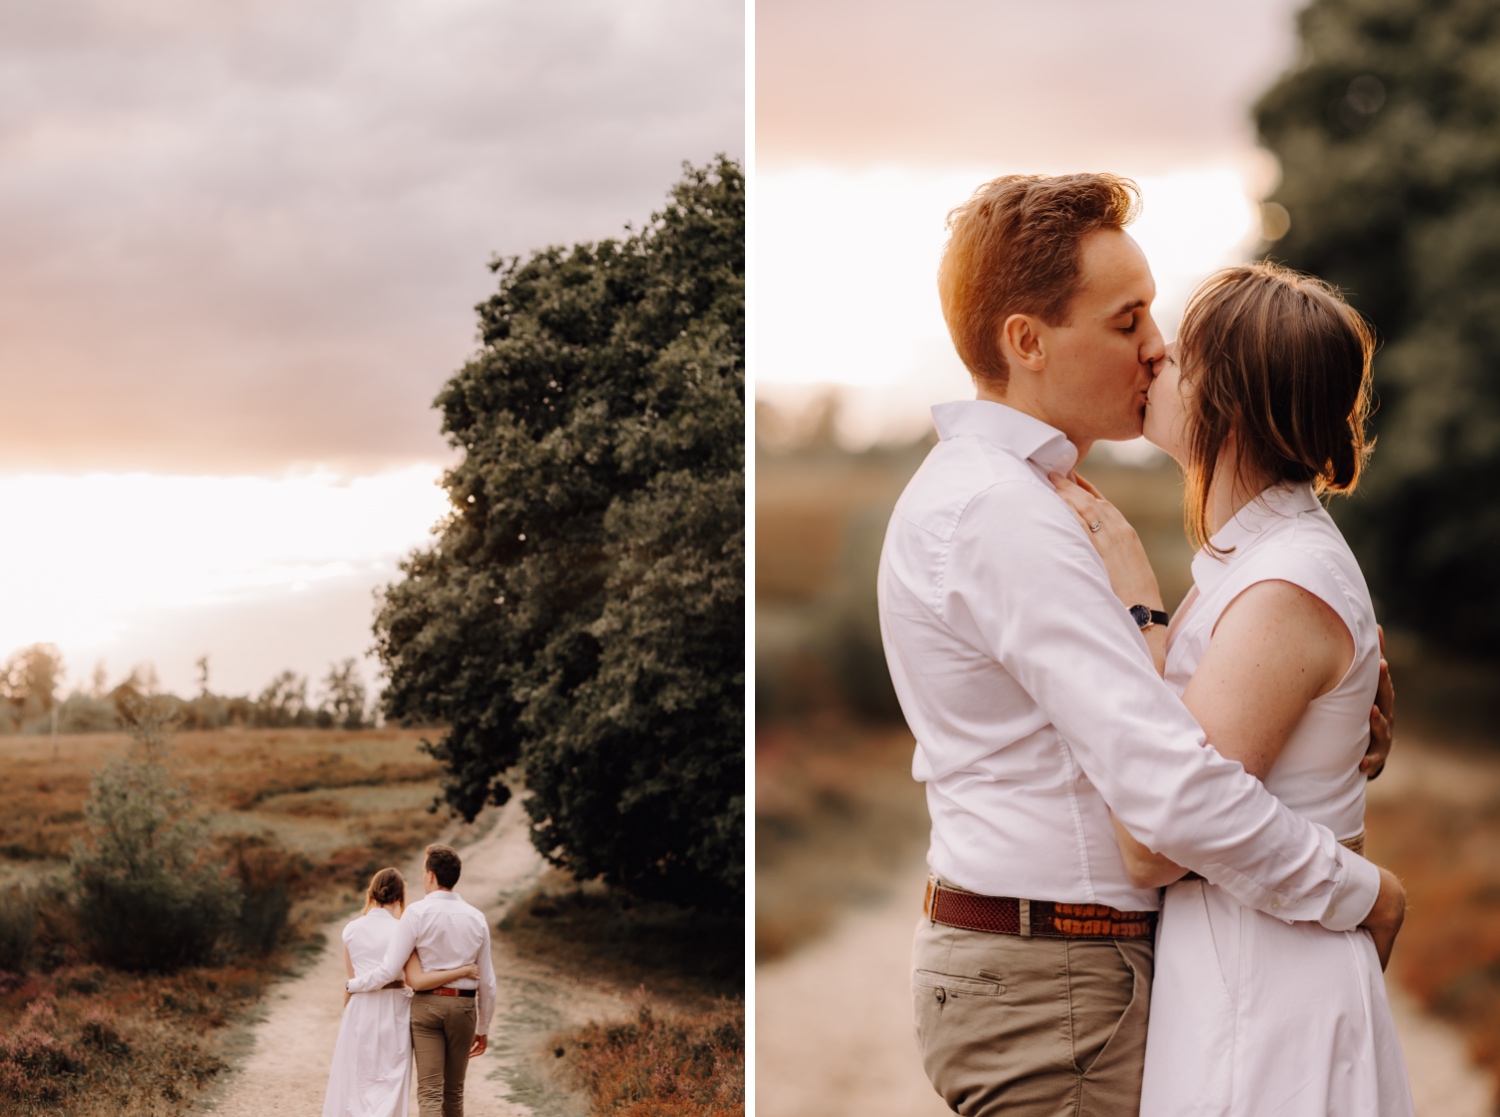 gezinsfotograaf limburg - koppel kust elkaar innig tijdens fotoshoot